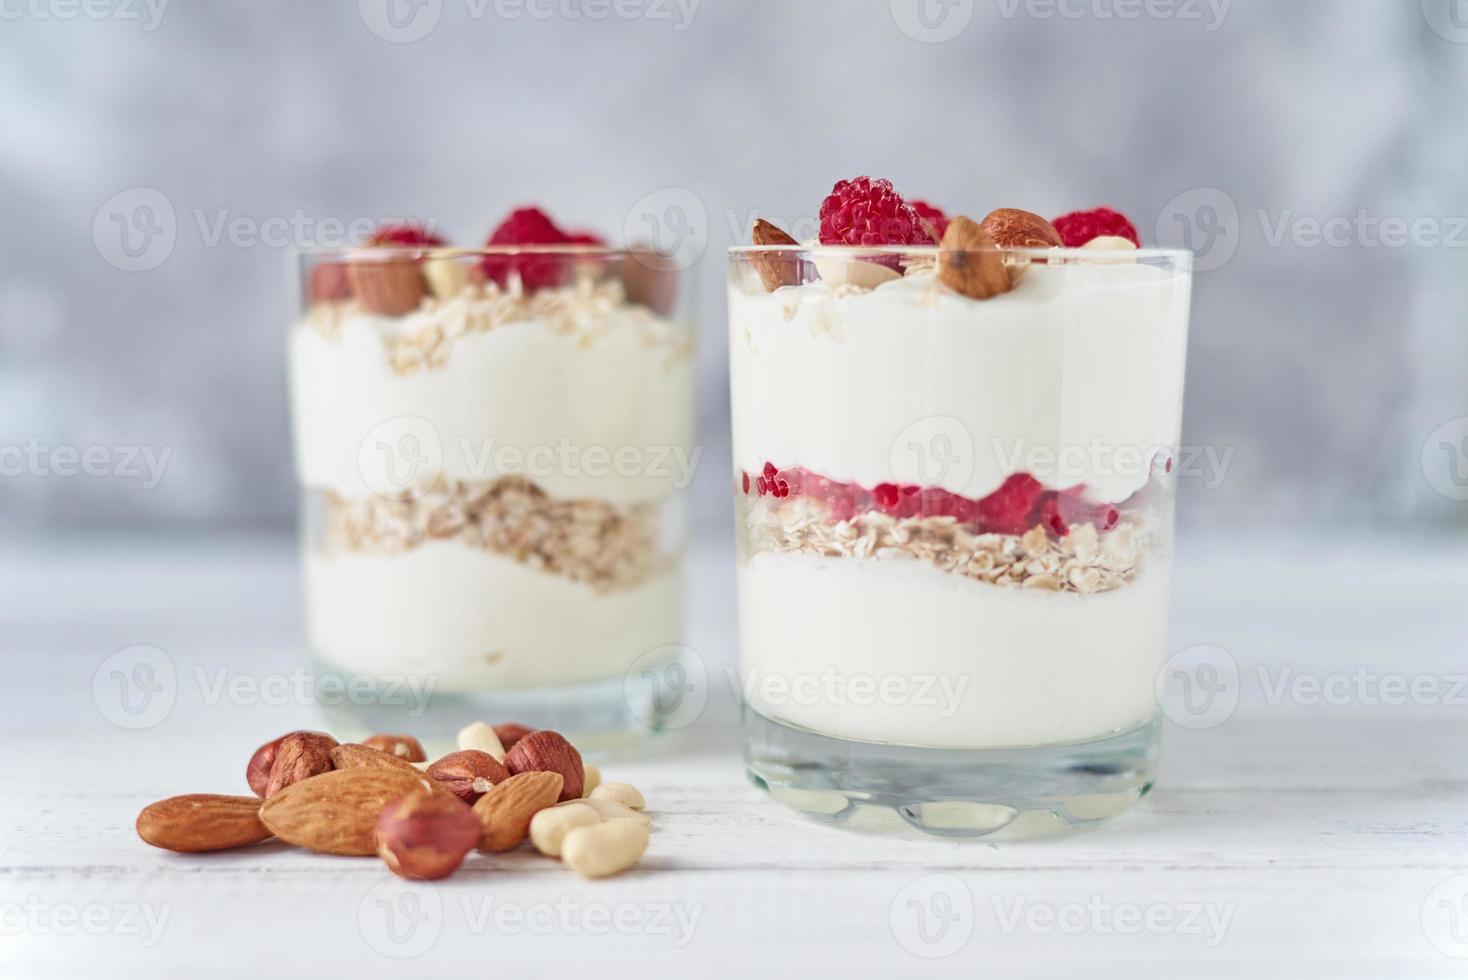 dos vasos de granola de yogur griego con frambuesas, copos de avena y nueces foto